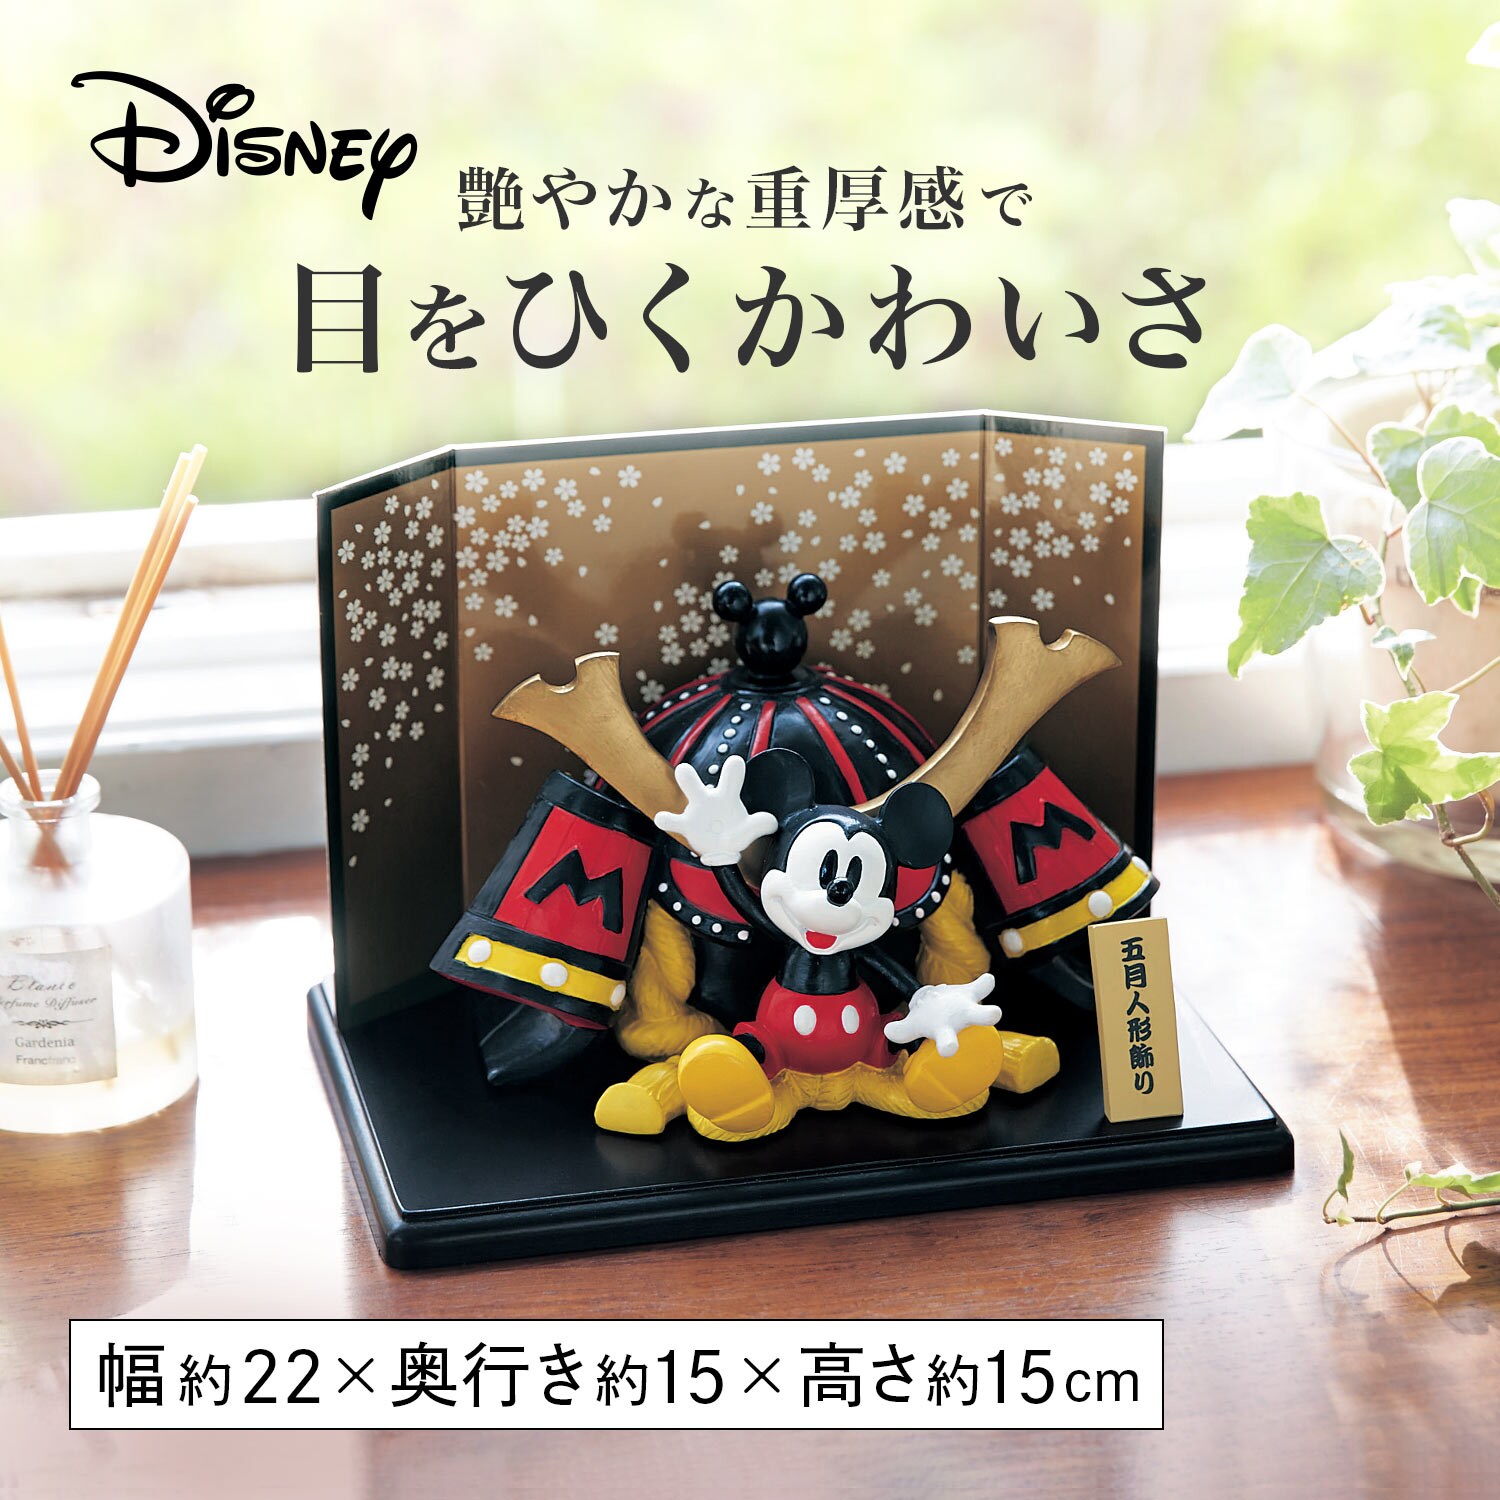 【ディズニー/Disney】五月人形「ミッキーマウス」